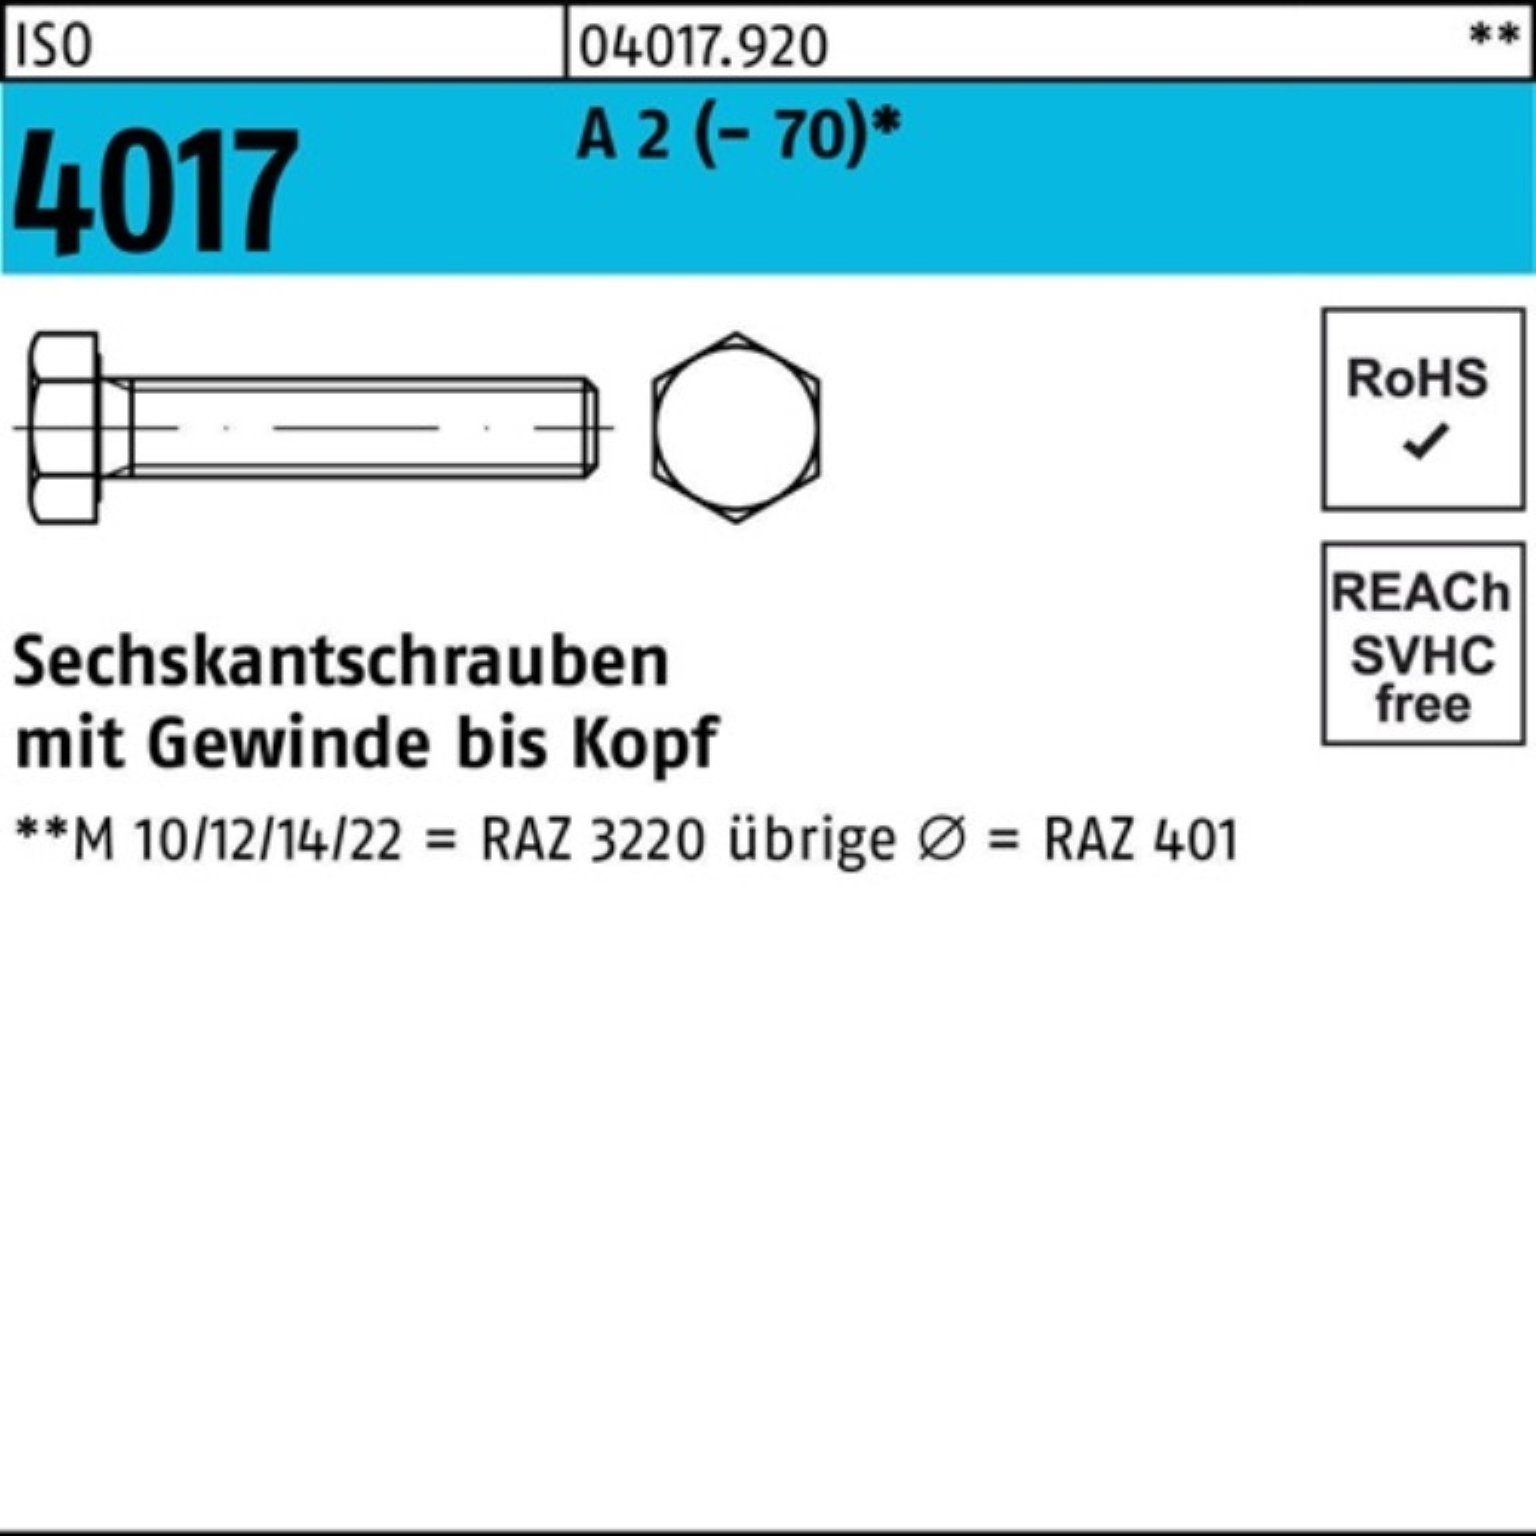 Bufab Sechskantschraube 100er Pack Sechskantschraube ISO 4017 VG M8x 10 A 2 (70) 100 Stück